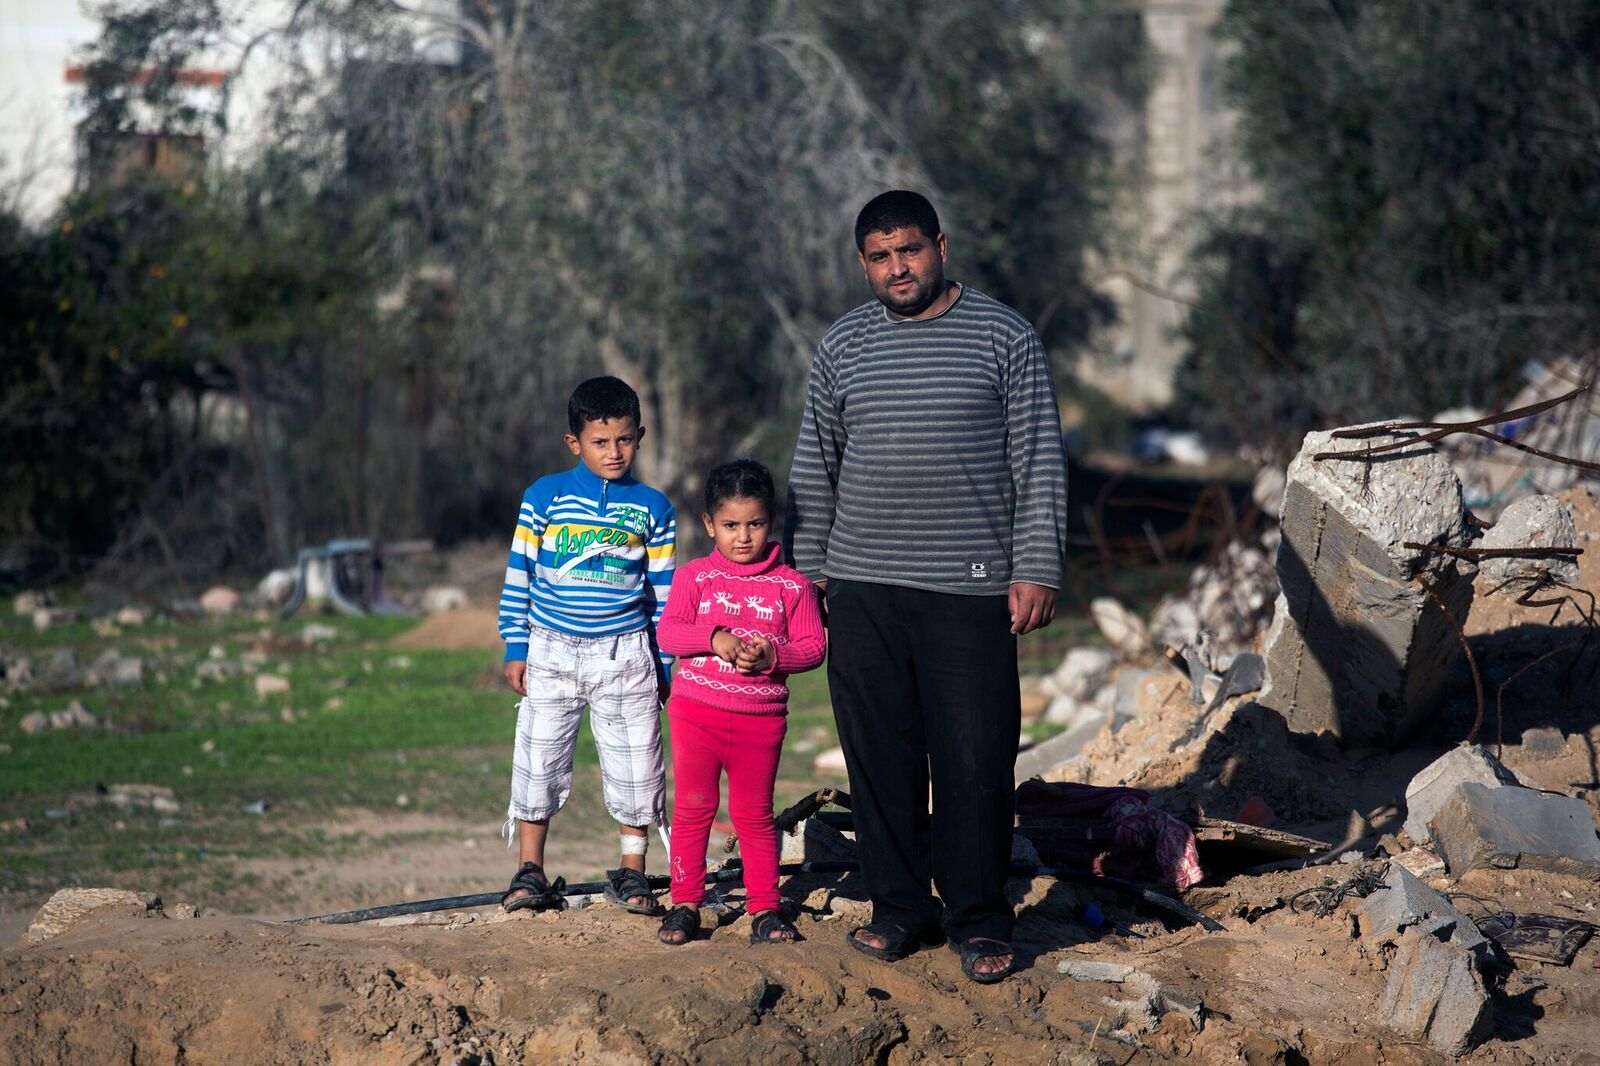 Husejn jako jedna z trzech osób przeżył bombardowanie swojego rodzinnego domu. Na zdjęciu razem z dziećmi Husamem i Olfat.
